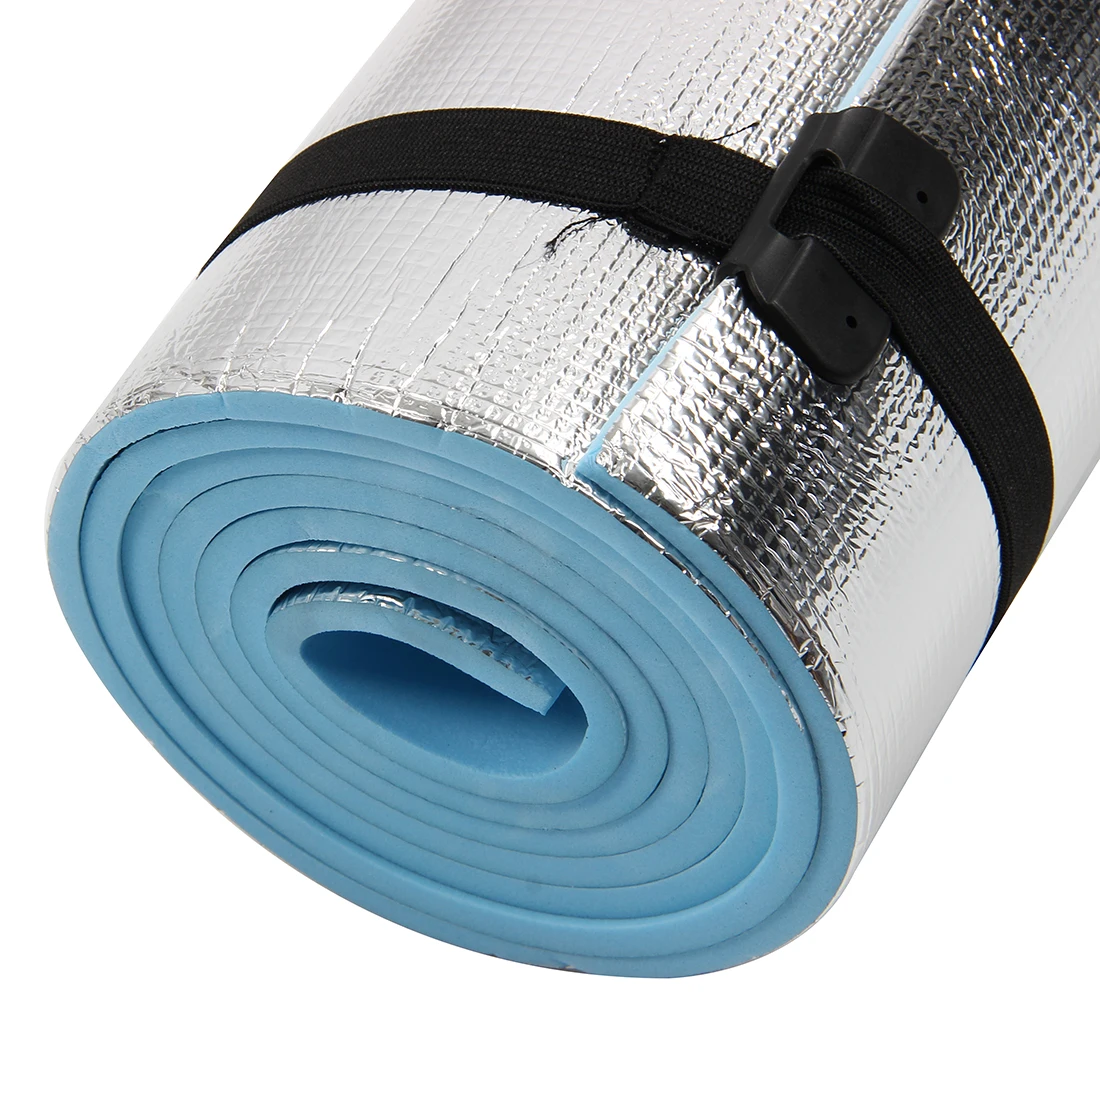 Экстра толстый Кемпинг подстилка на коврик для йоги спальный Открытый Матрас Фитнес мат(синий, серебристый